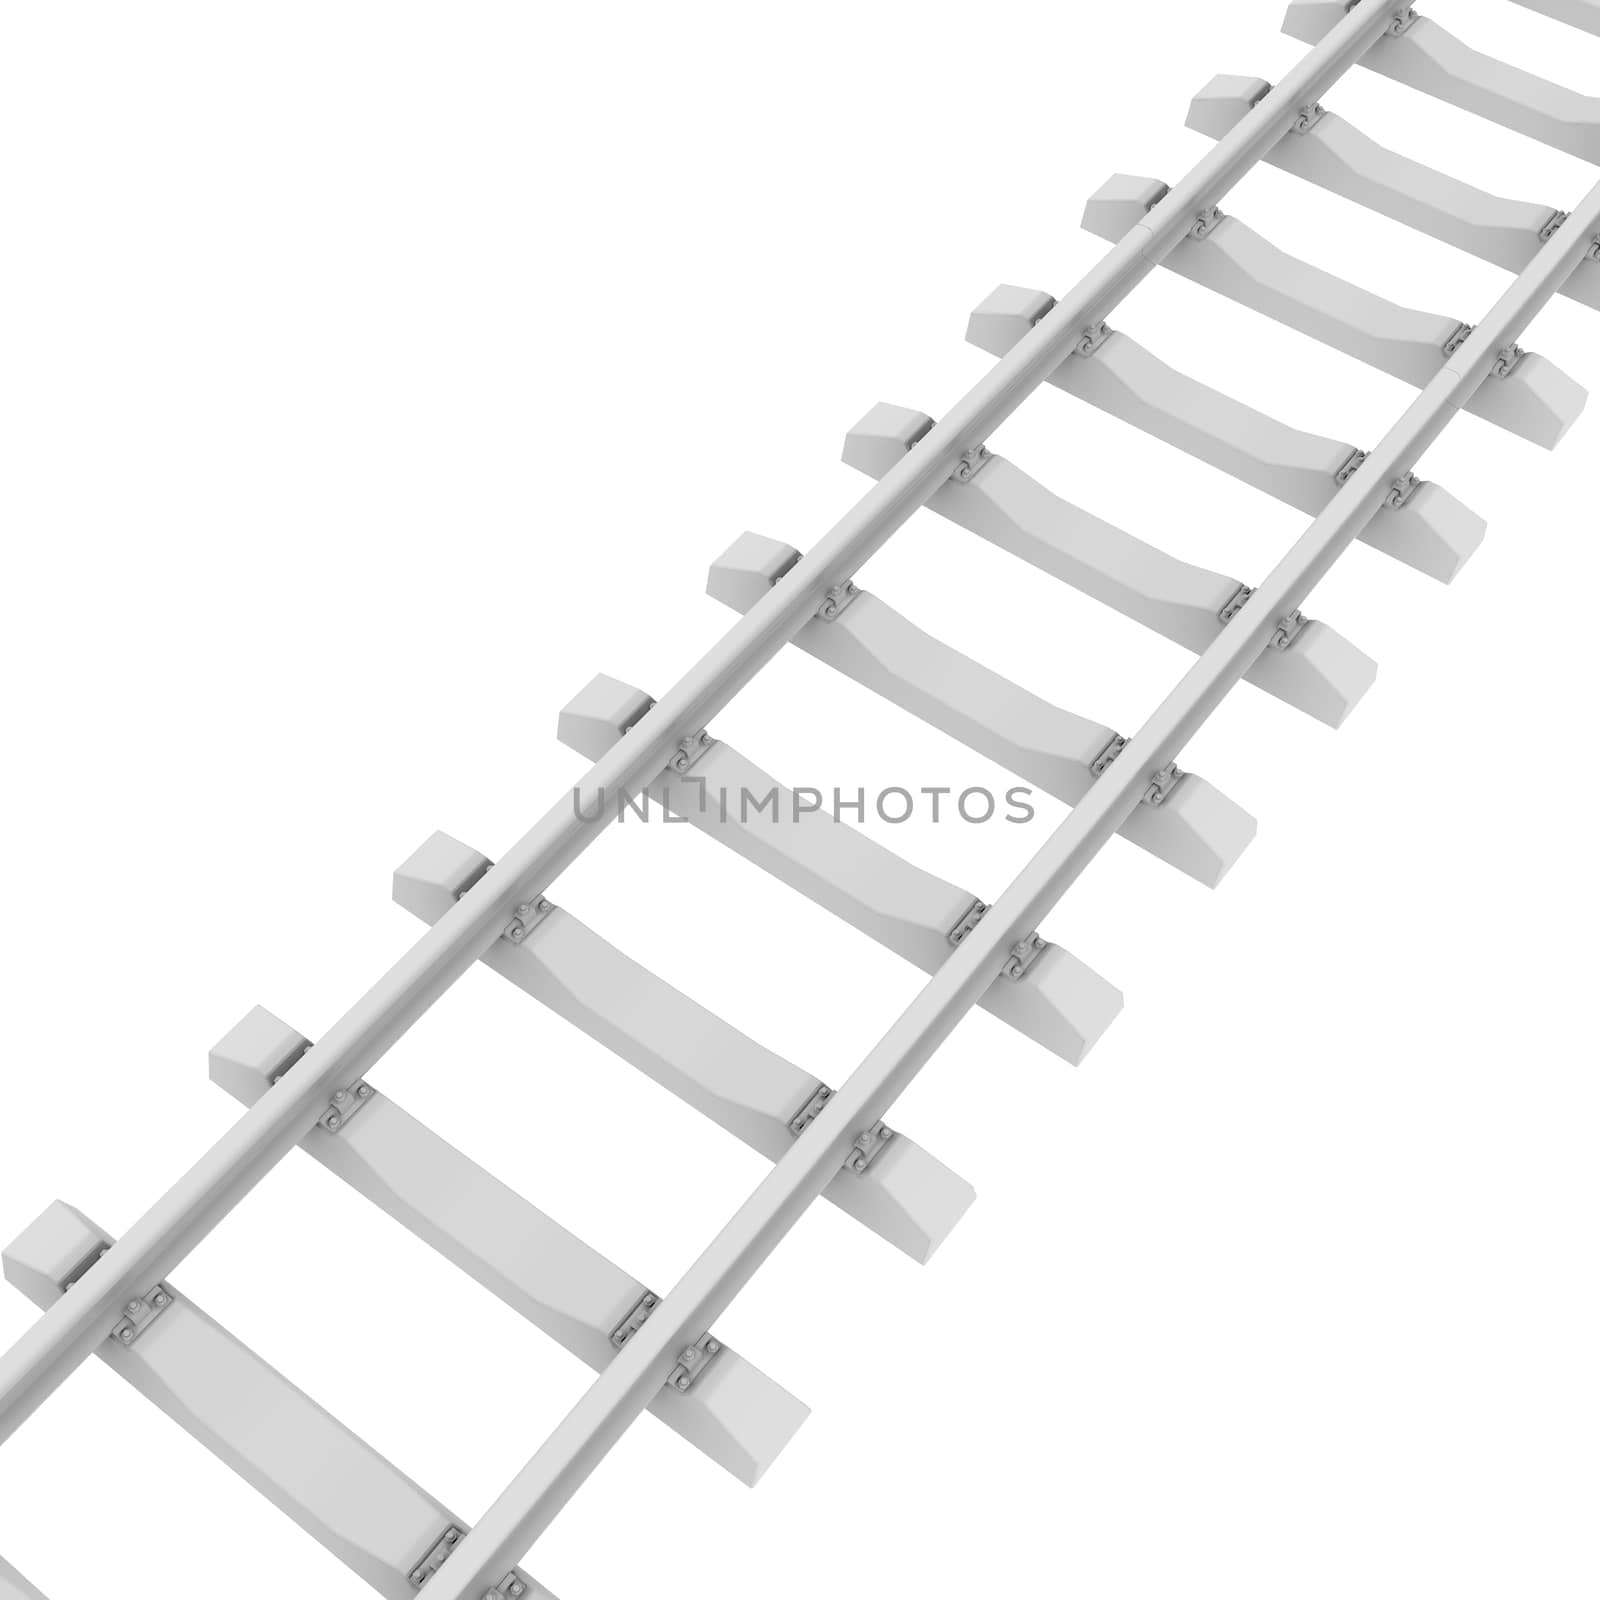 White railroad by cherezoff